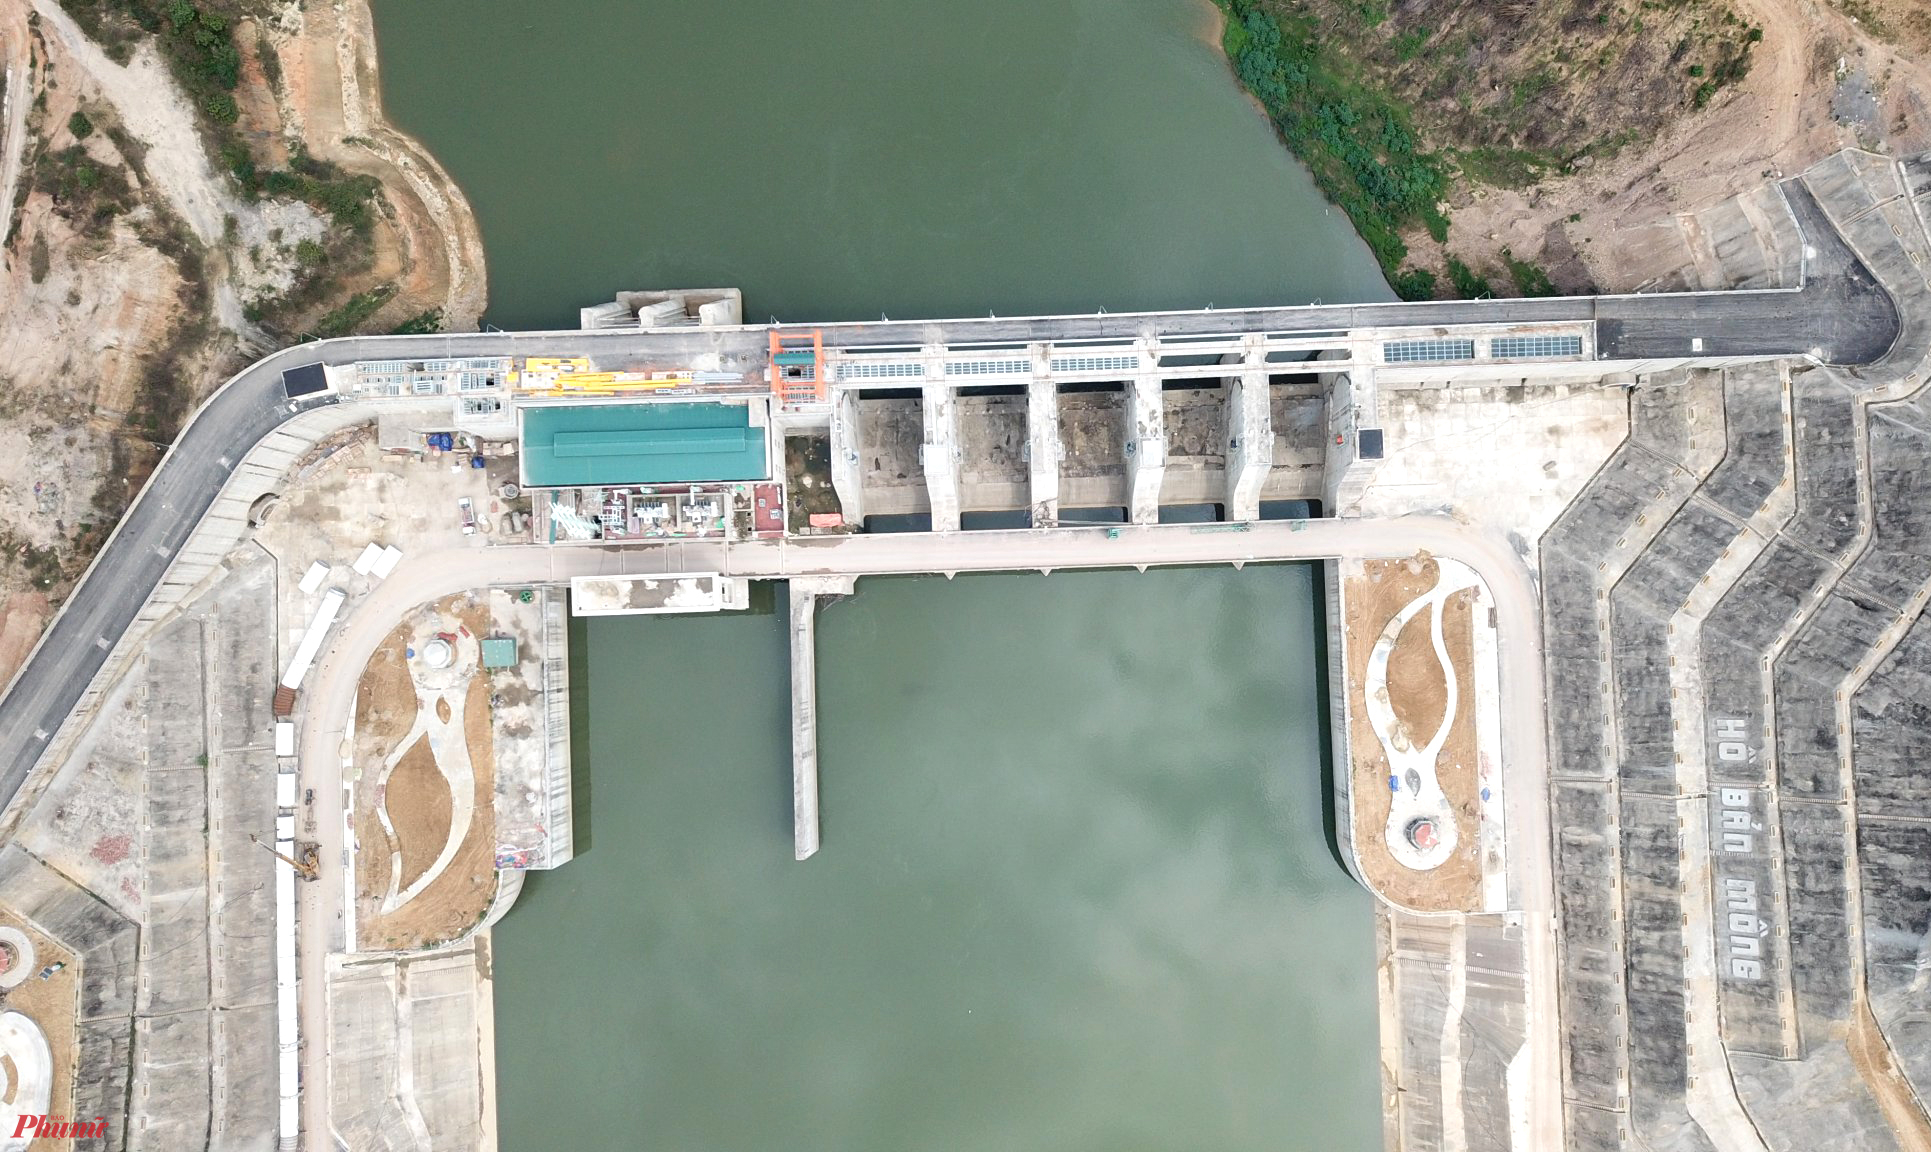 Dự án hồ thủy lợi Bản Mồng là công trình thủy nông lớn nhất Nghệ An. Công trình này được xây dựng trên thượng nguồn sông Hiếu, thuộc địa phận xã Yên Hợp (huyện Quỳ Hợp, Nghệ An) từ năm 2019.